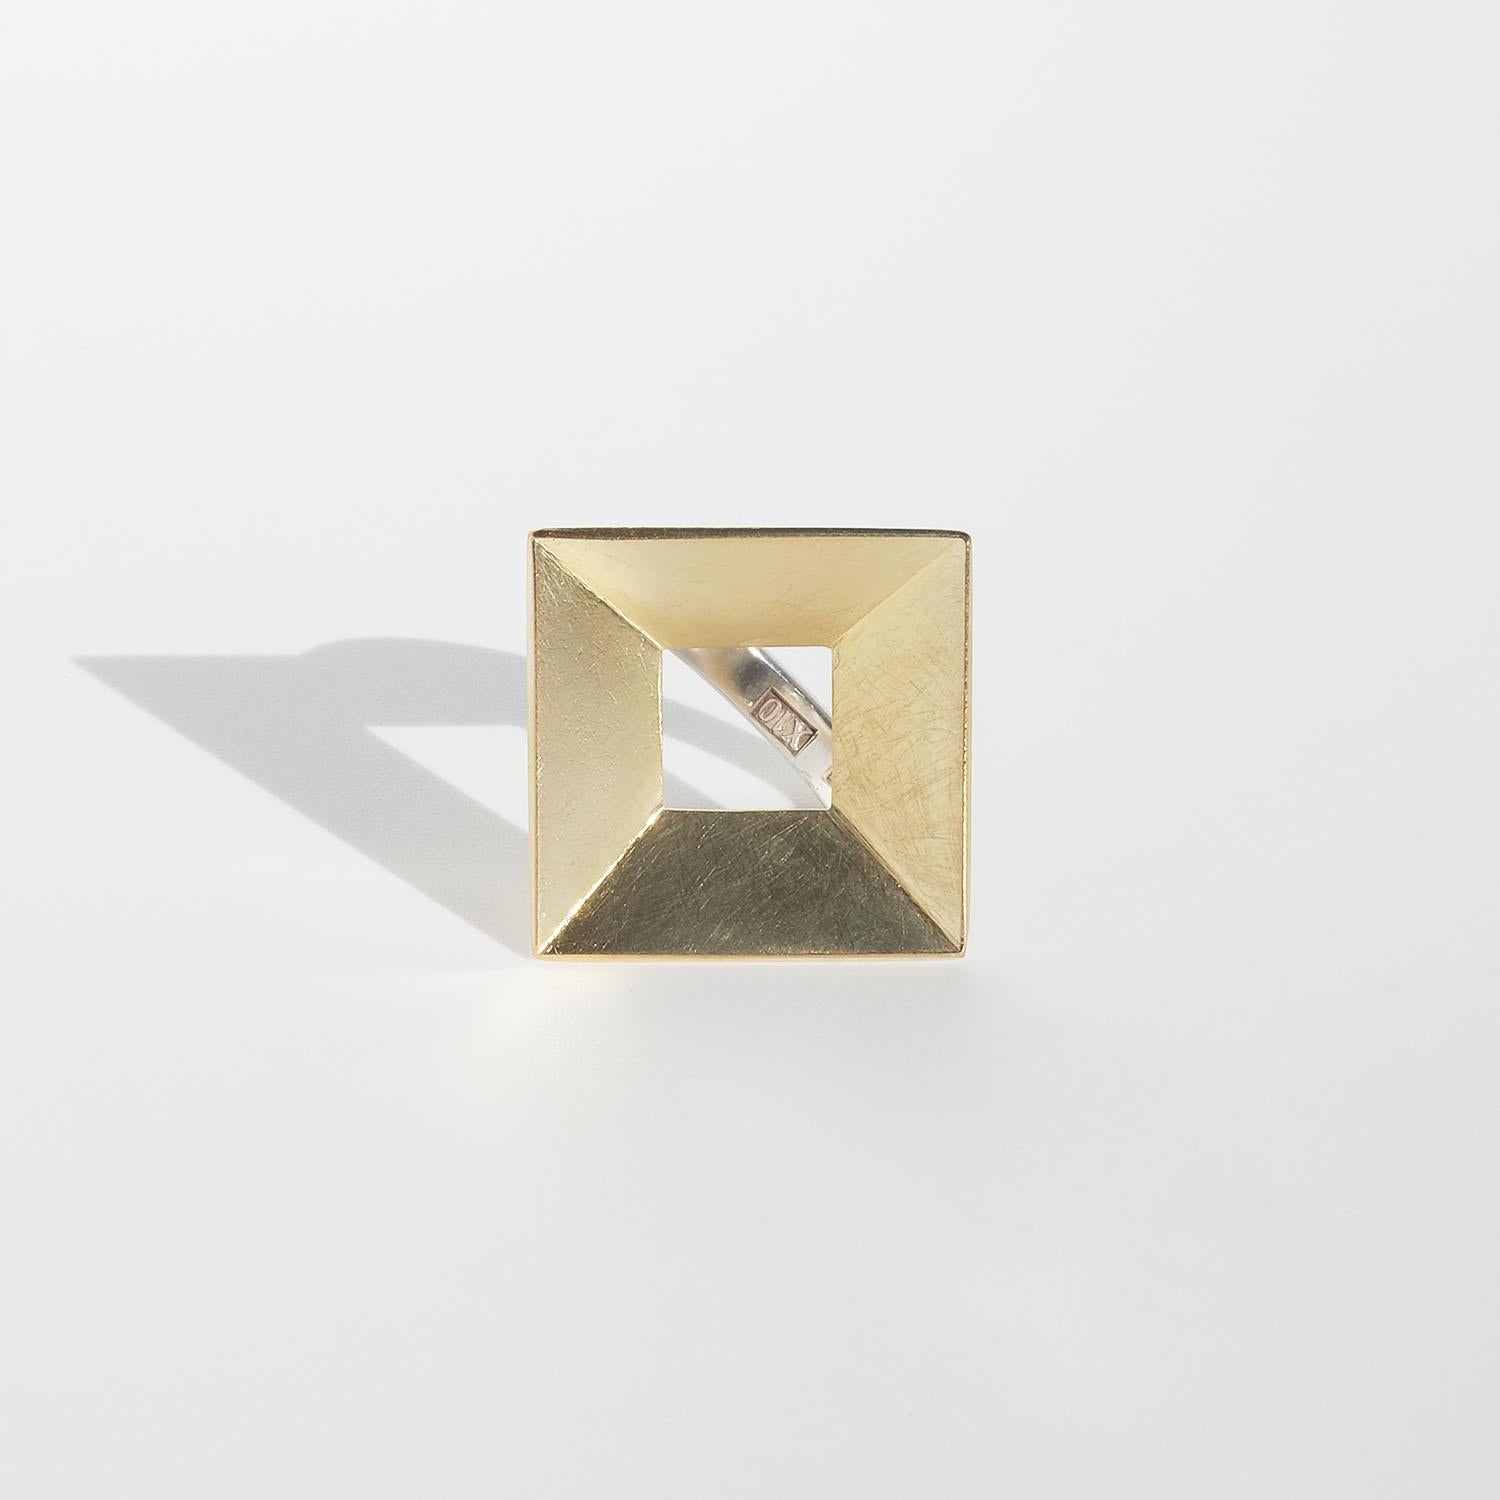 Cette bague en argent sterling est ornée d'un carré torsadé en or 18 carats.

Le carré torsadé ressemble à un cadre d'art dans lequel votre doigt formera le motif. C'est une bague que vous pouvez porter à tout moment et pour toujours.

Marie